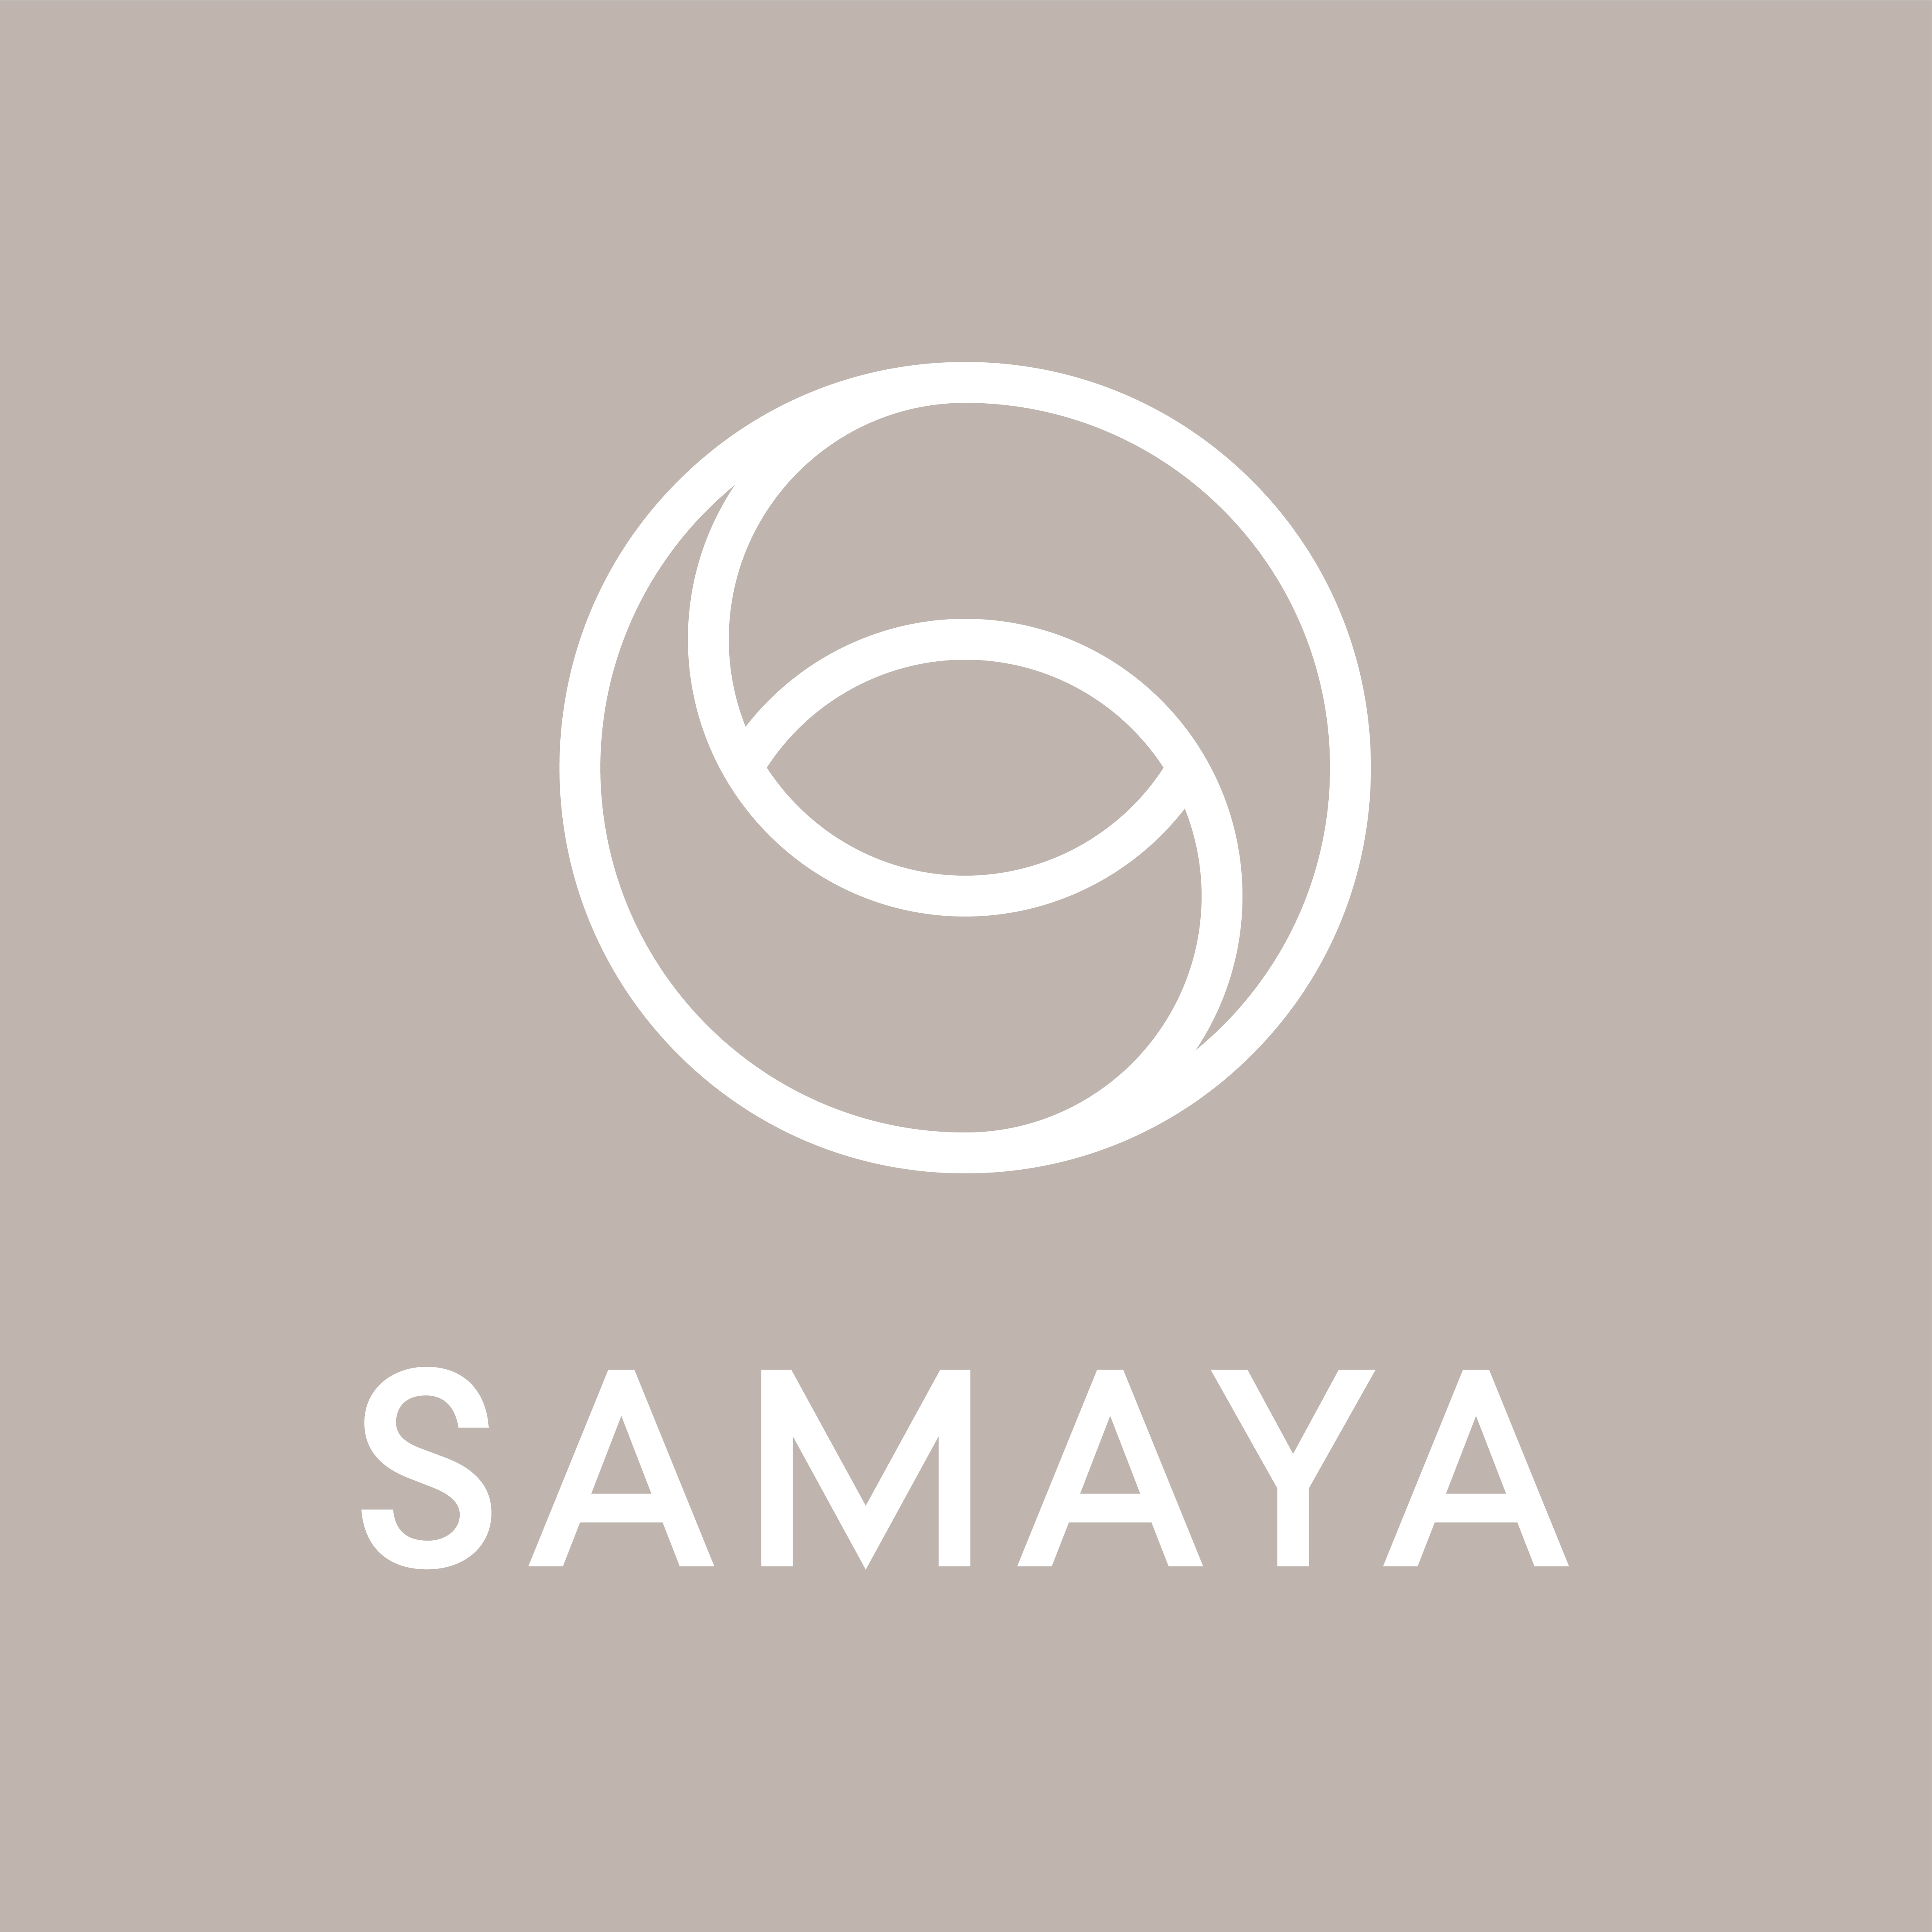 Samaya